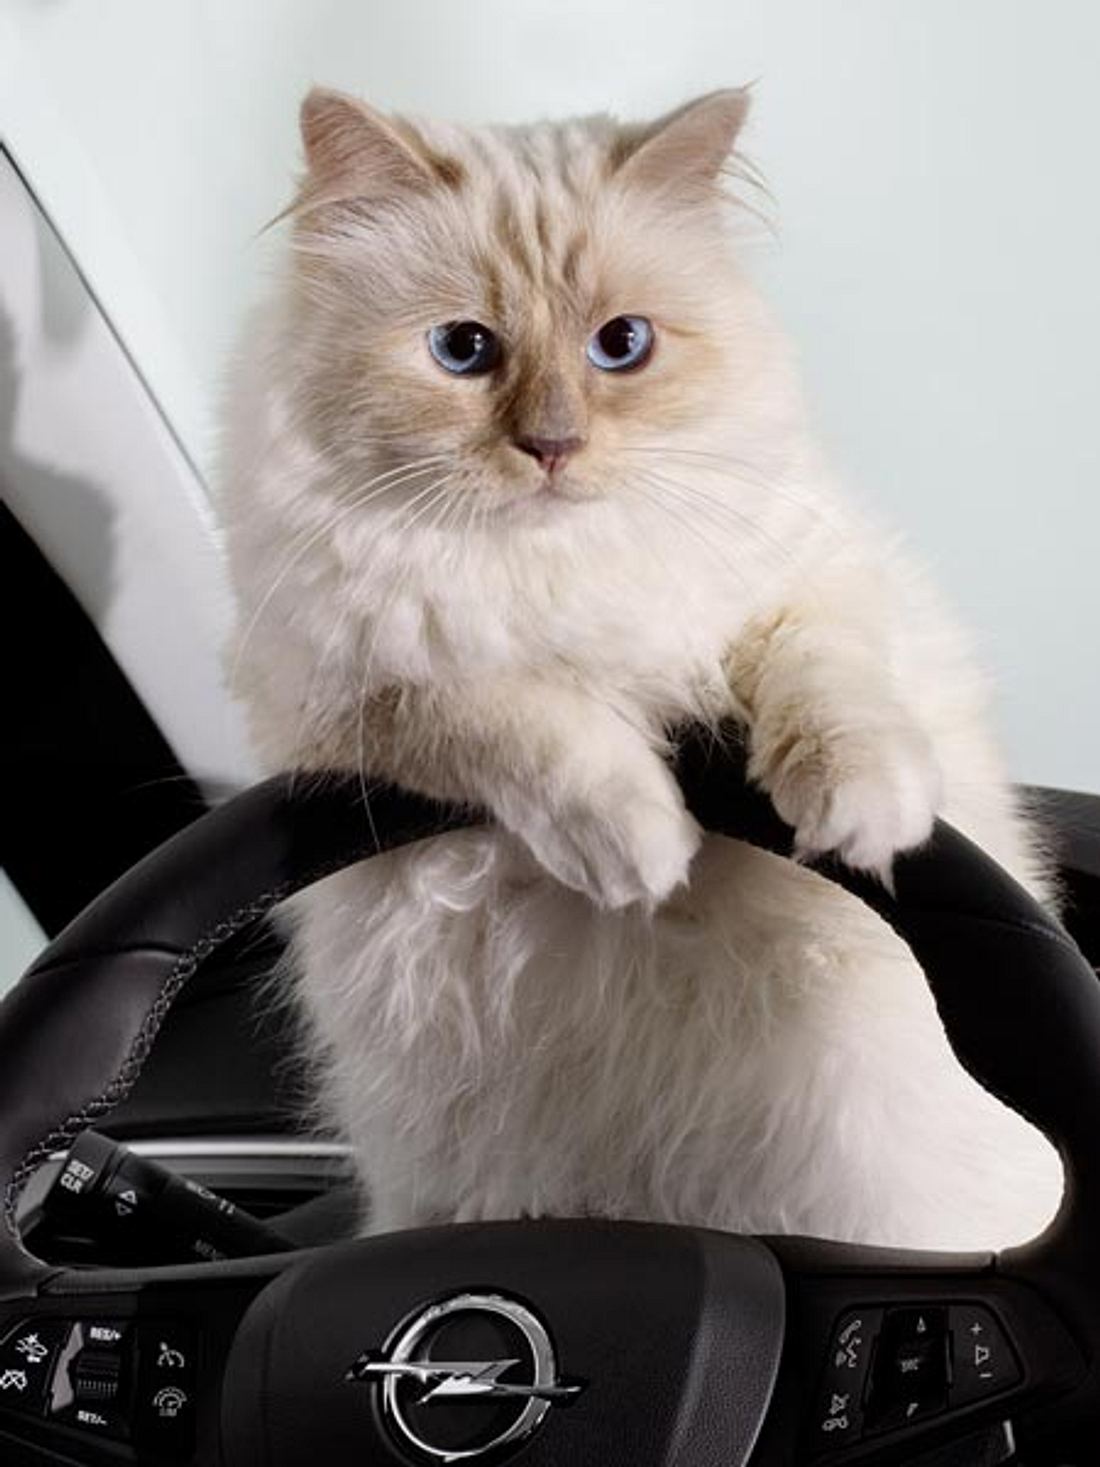 Karl Lagerfeld: Seine Katze Chaupette verdient 3 Millionen Dollar!